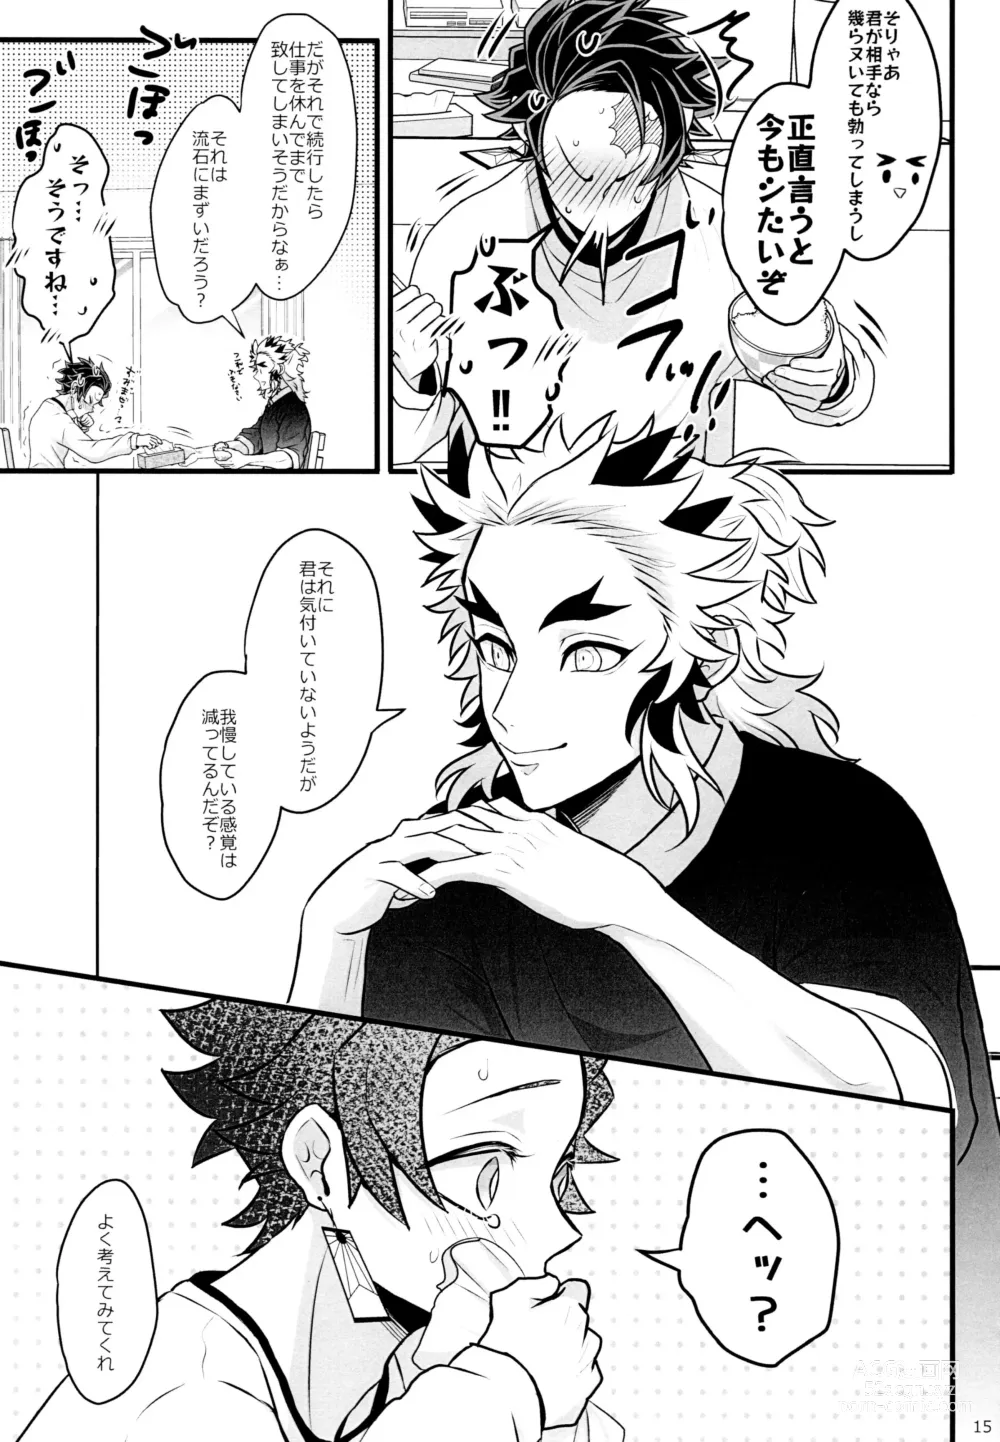 Page 15 of doujinshi Ore Seitsuu